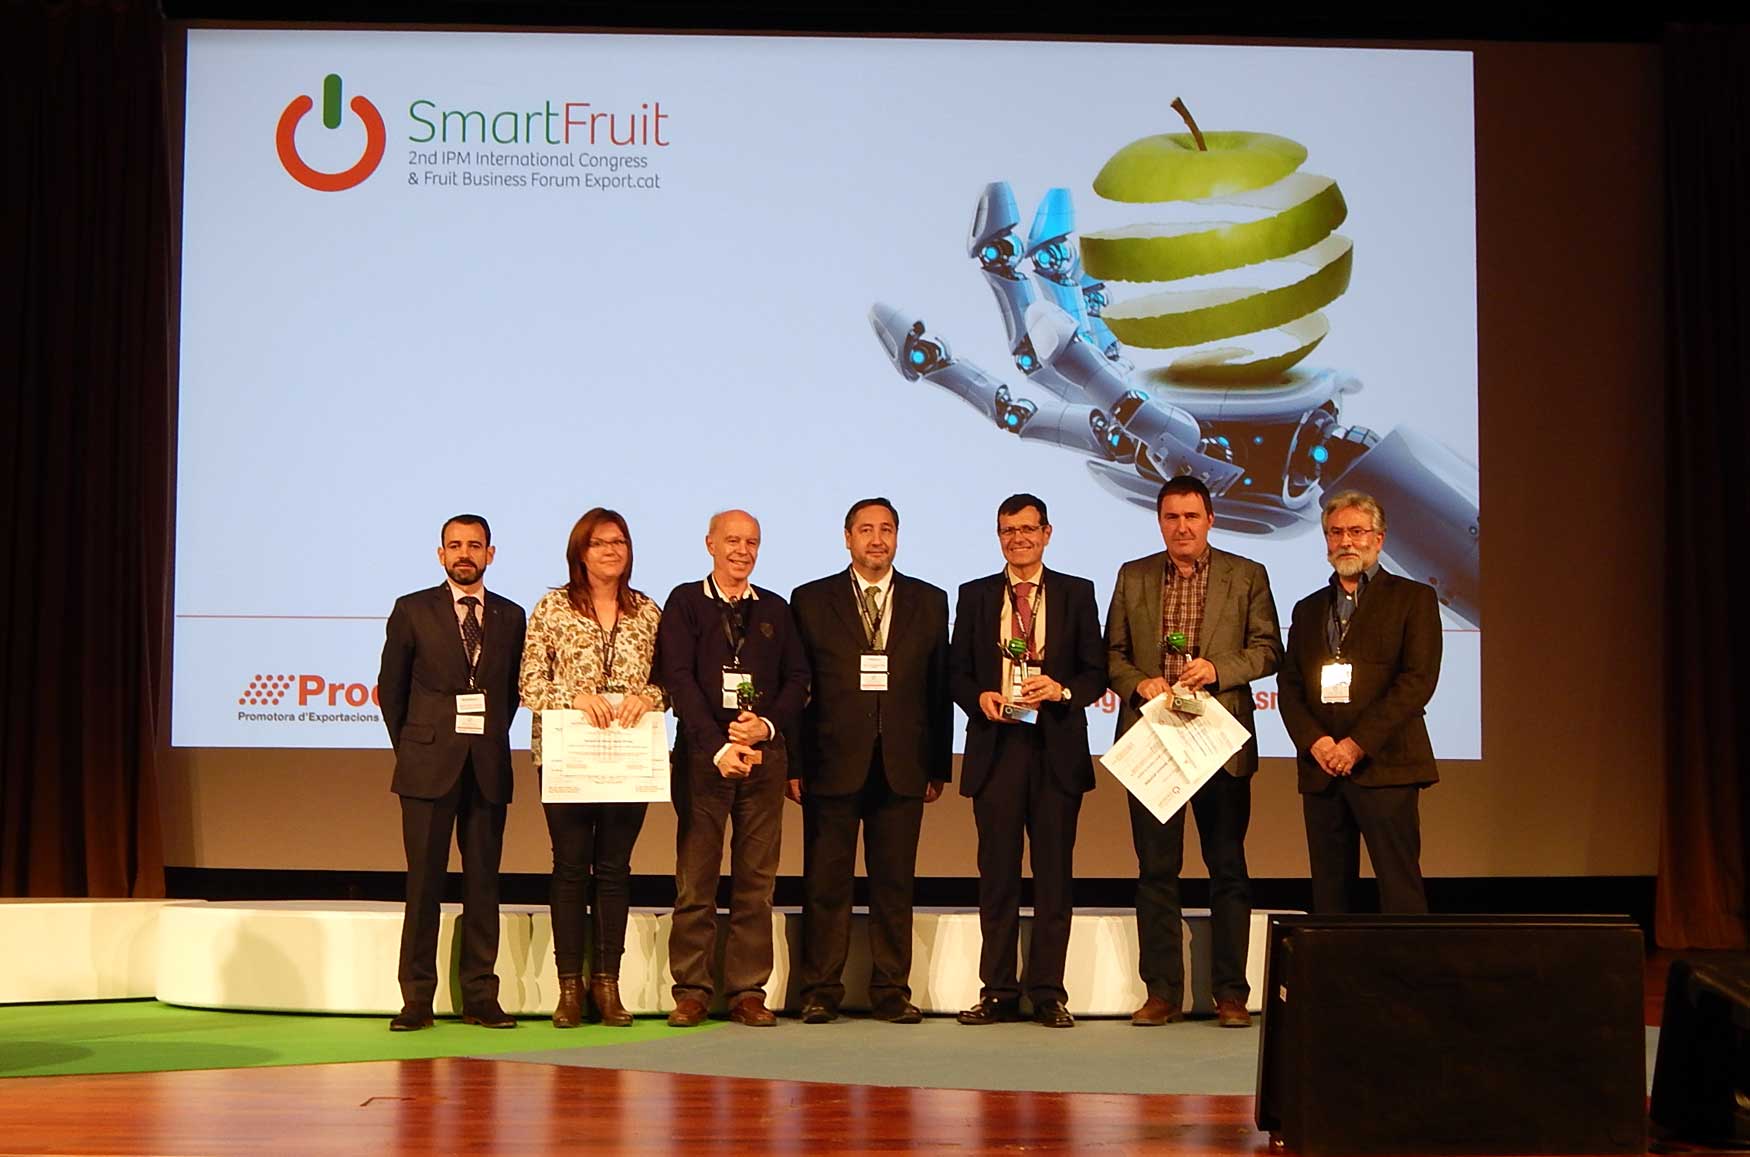 Fotografa de todos los premiados junto al consejero de Agricultura, Josep Maria Pelegr (en el centro)